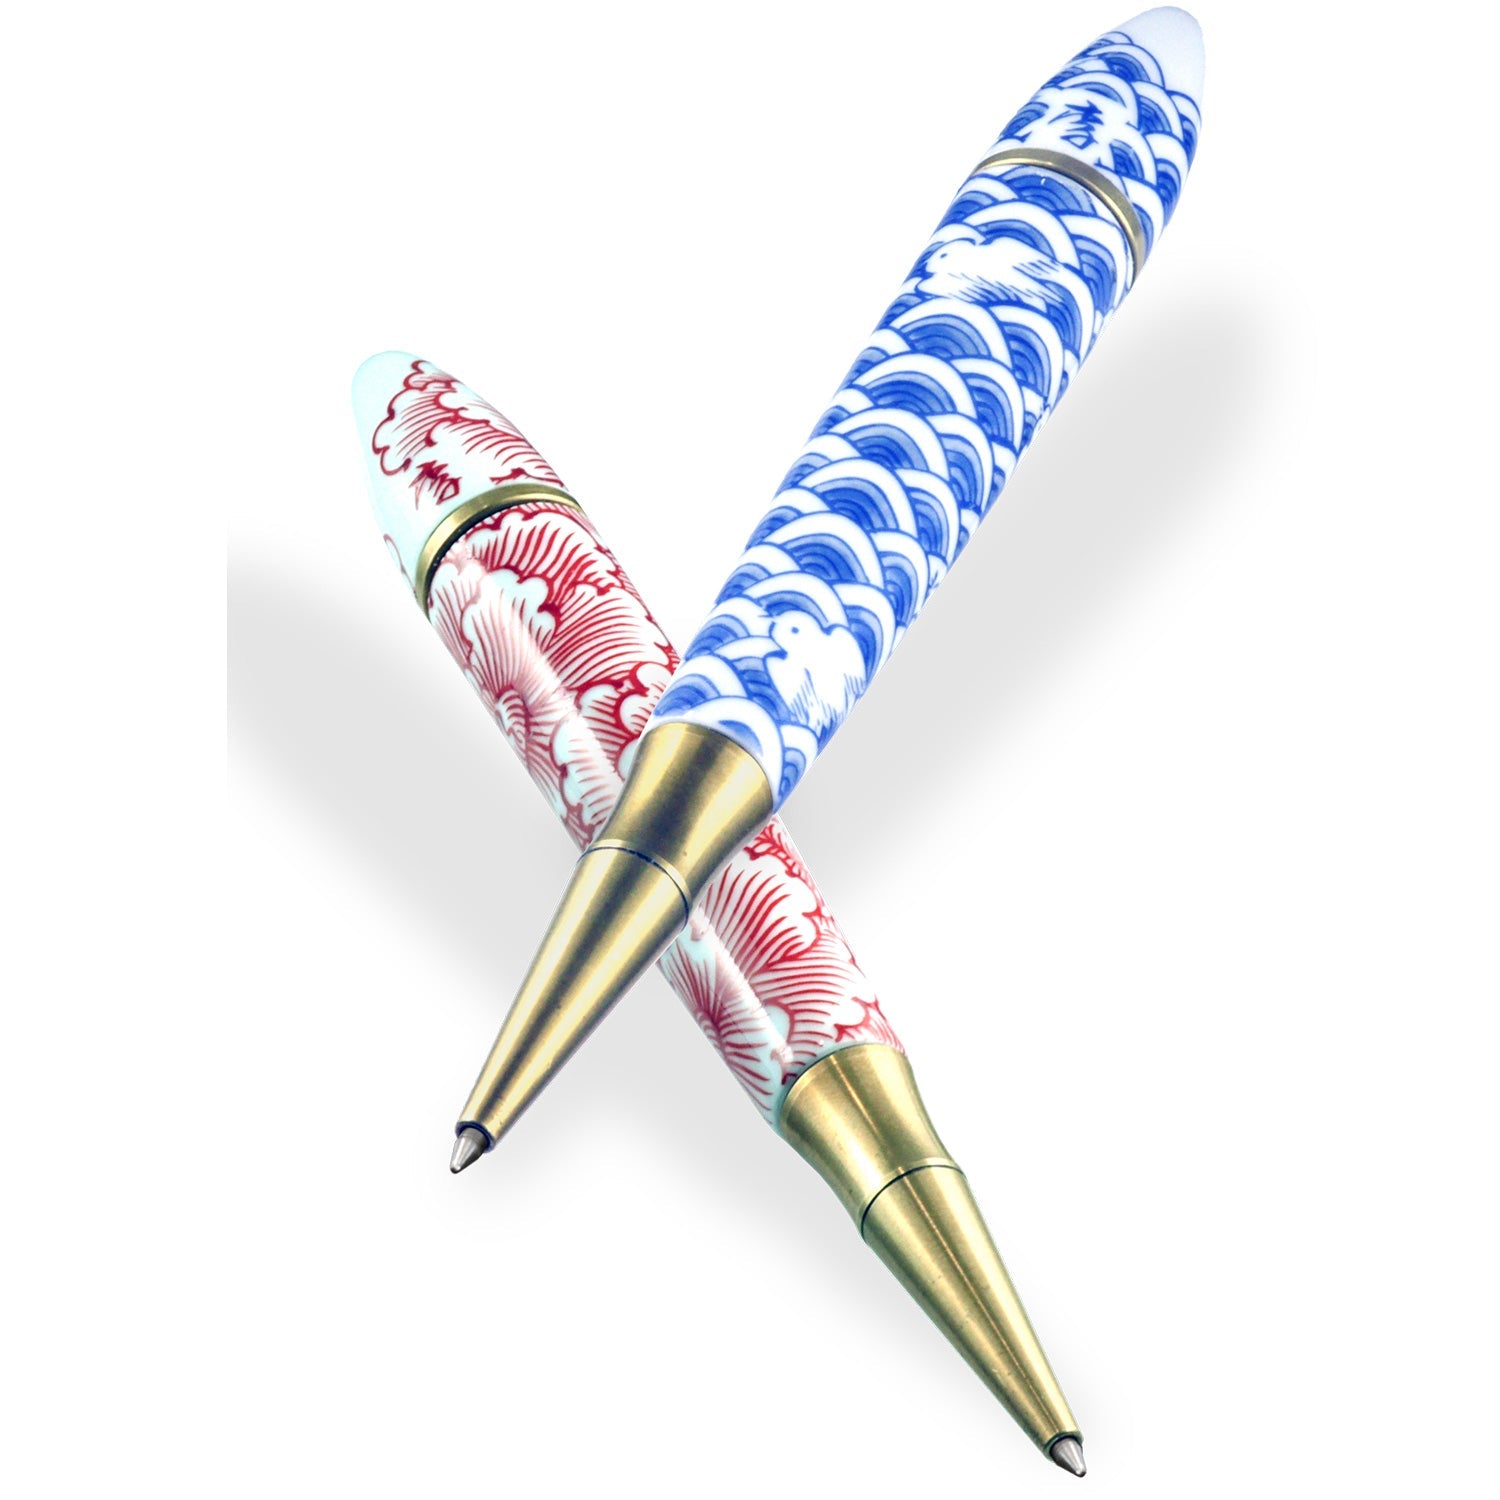 Arita ware ballpoint pen